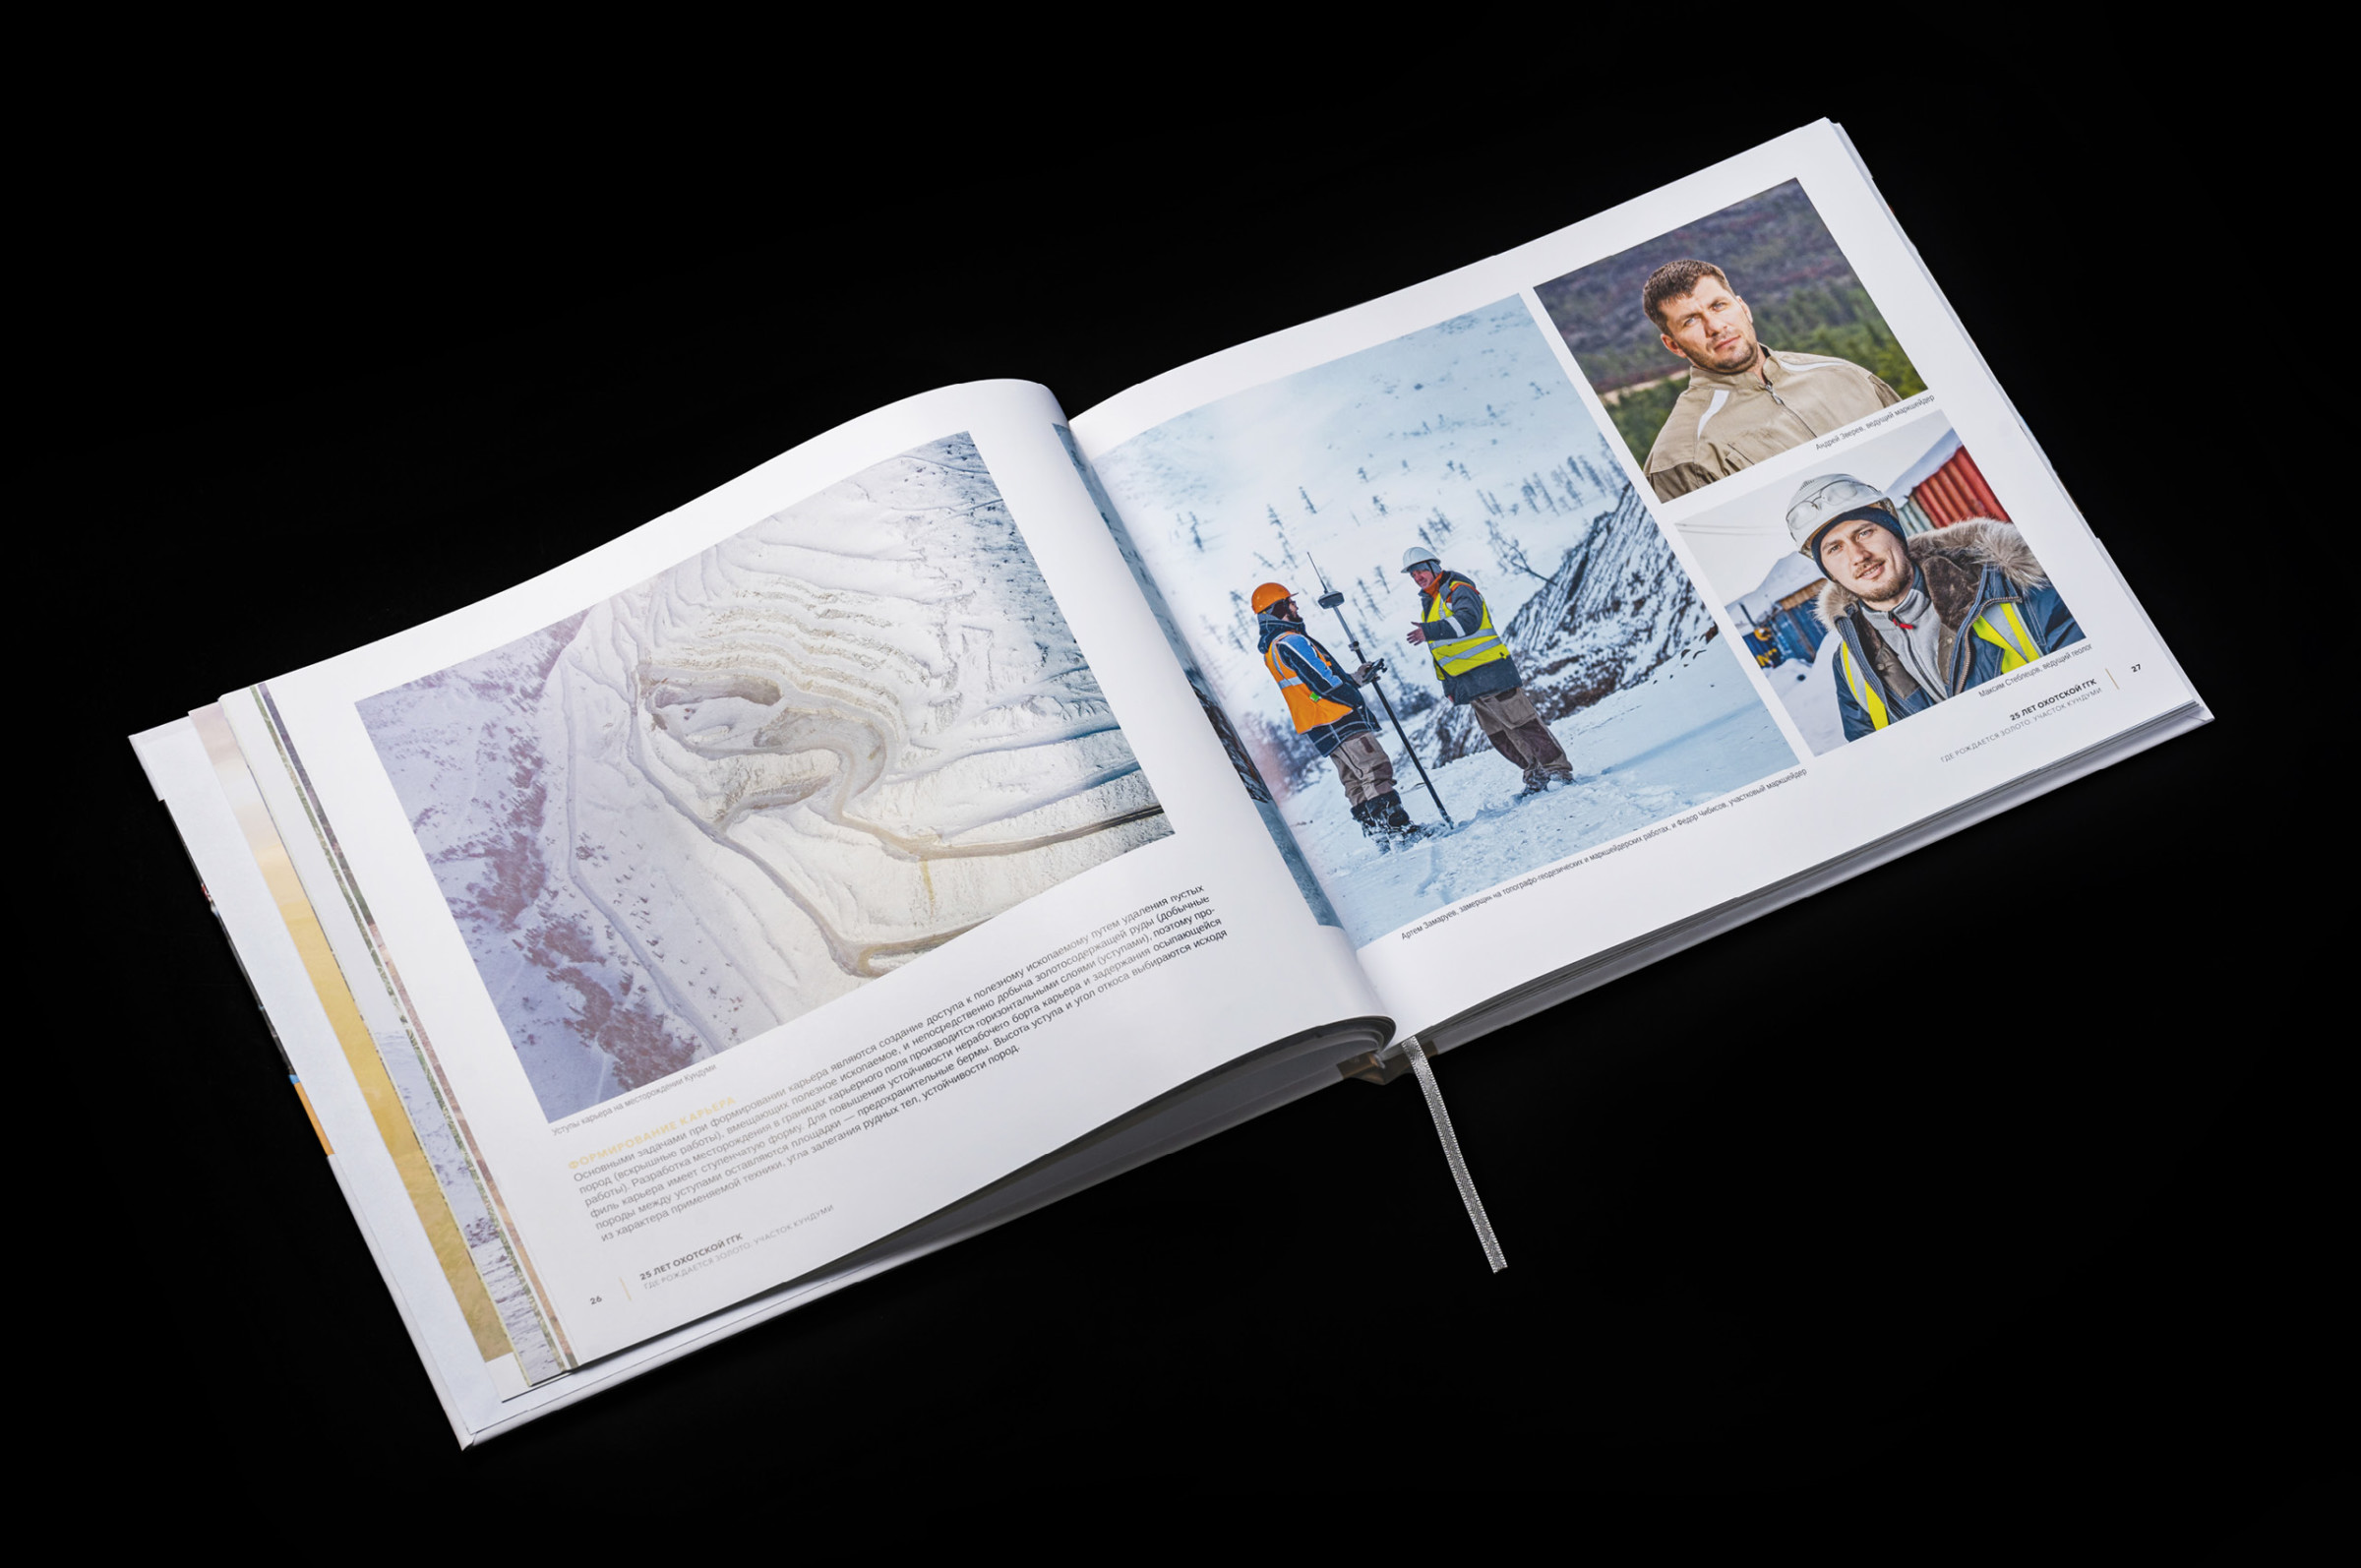 корпоративная фотокнига, фотоальбом в виде книги с историей компании сделали к юбилею Охотской ГГК